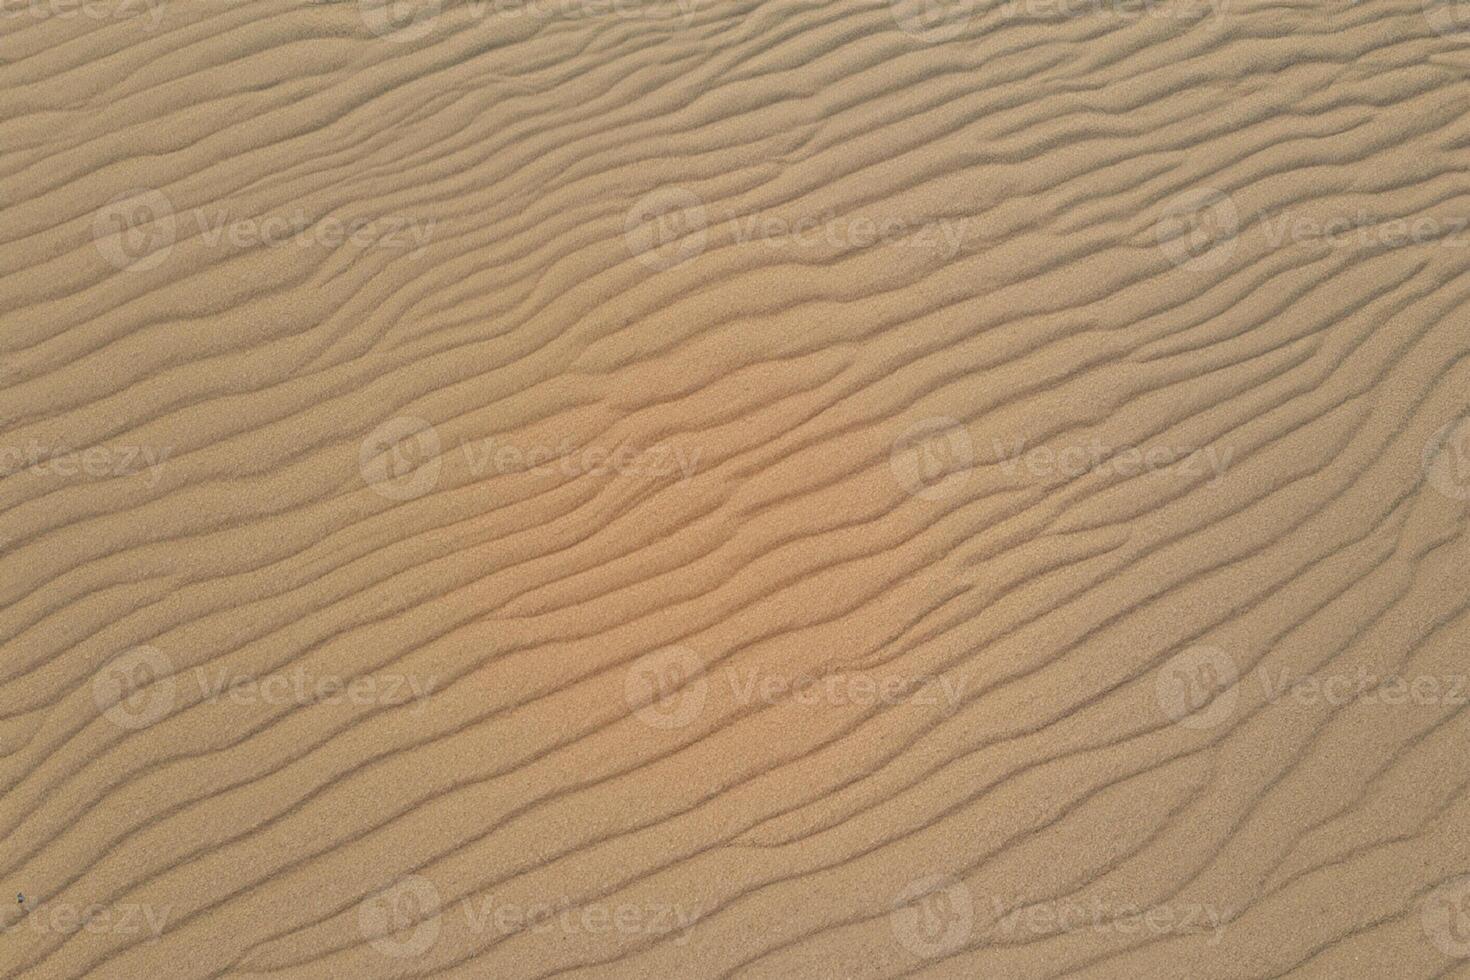 horizon havre aérien sérénité capture magnifique plage le sable de au-dessus de, une tranquille tapisserie de côtier beauté photo